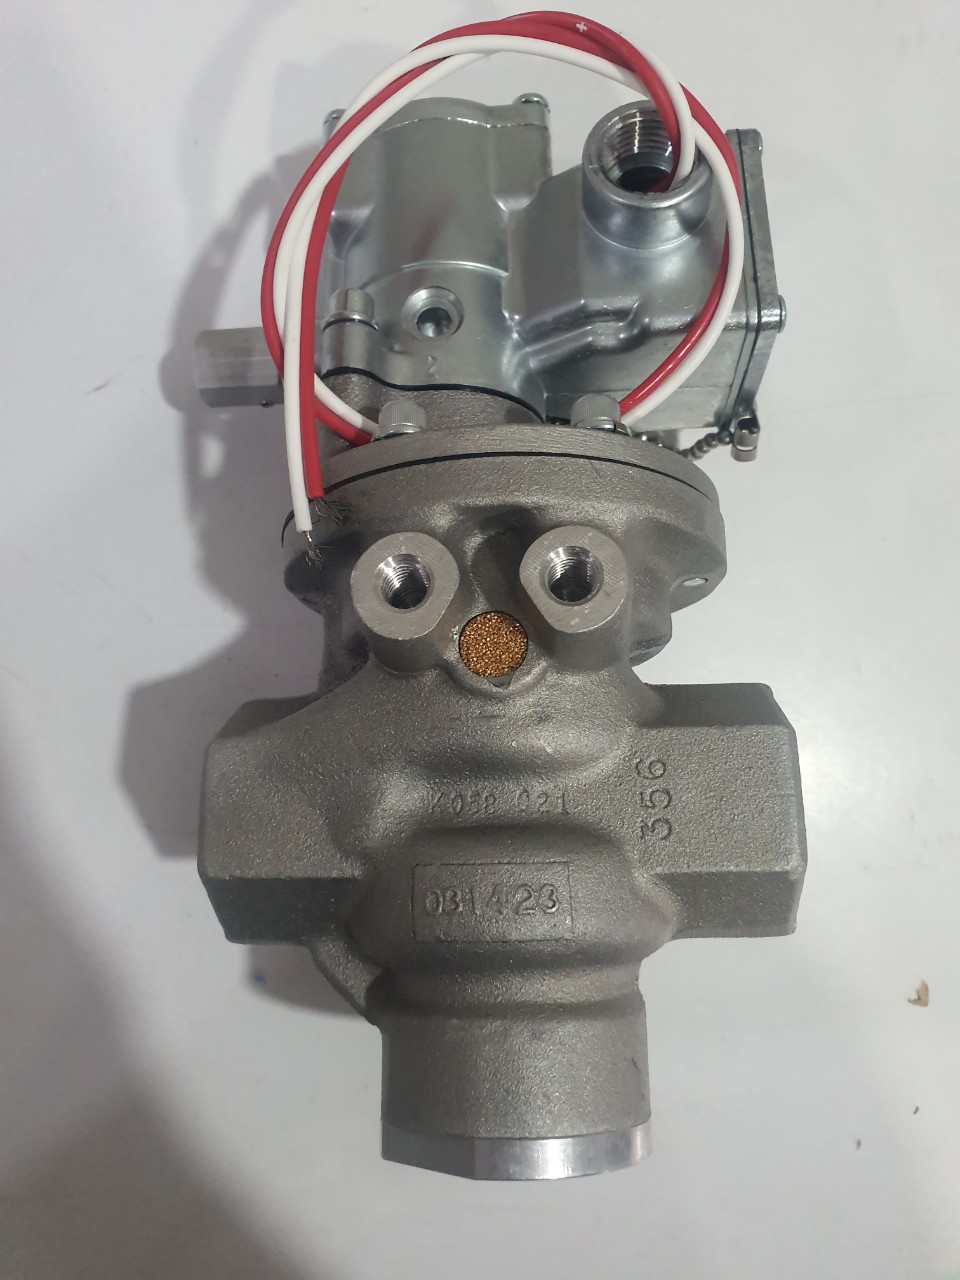 N3156500149 solenoid valve